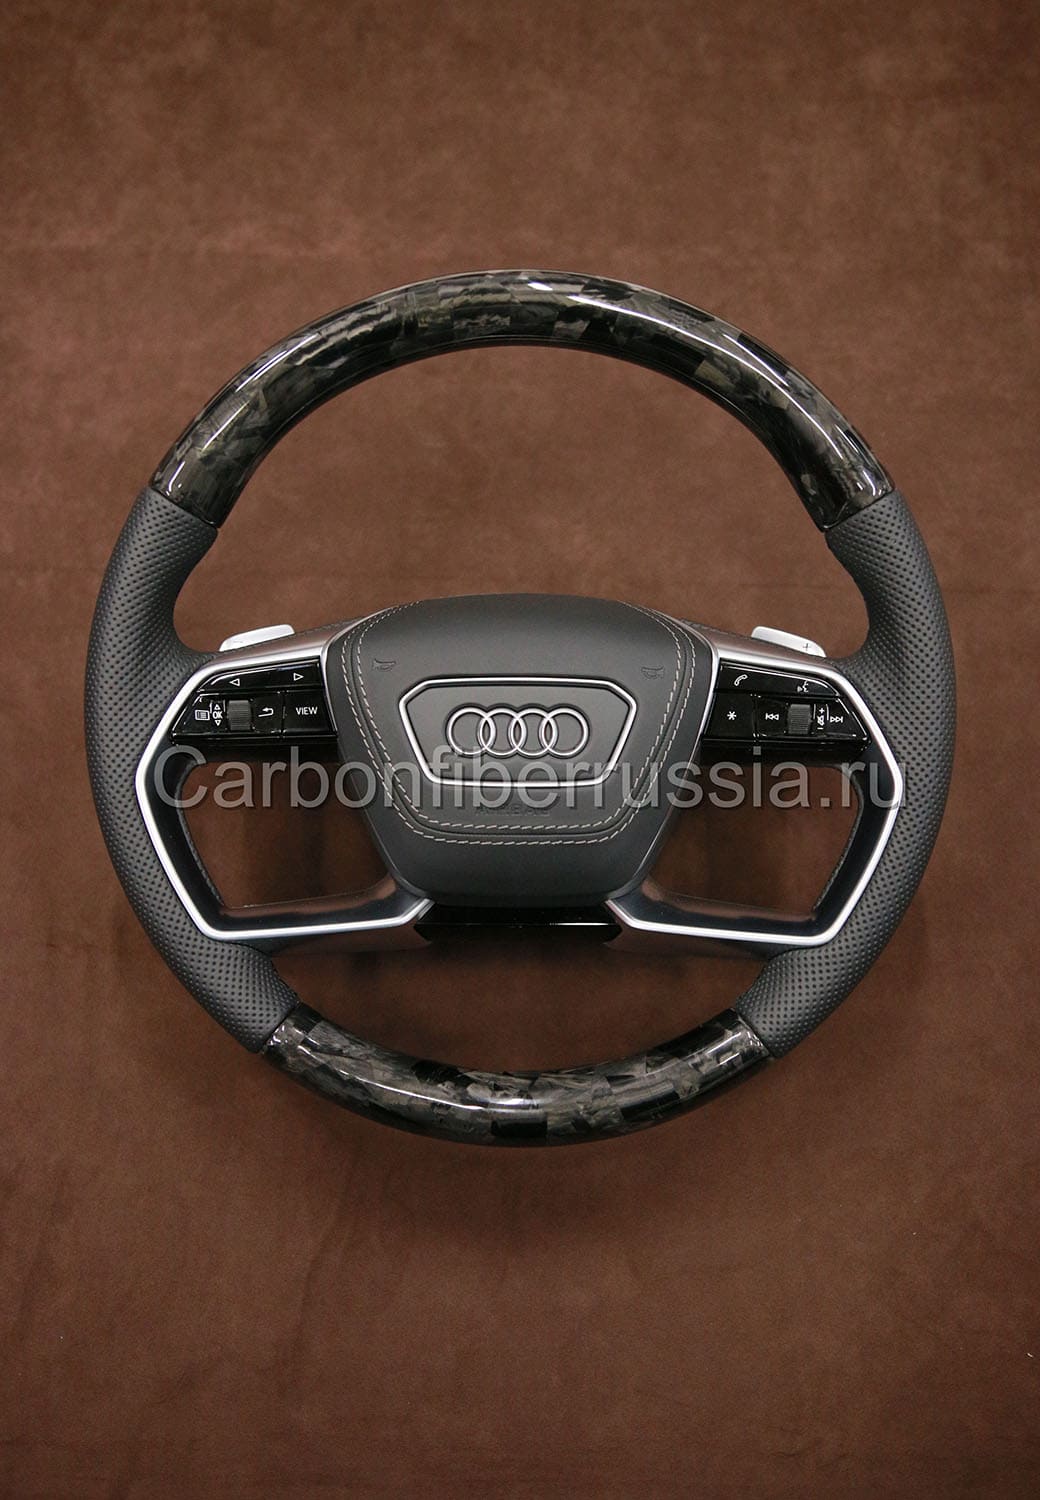 Карбоновый руль для Audi | CarbonFiberRussia